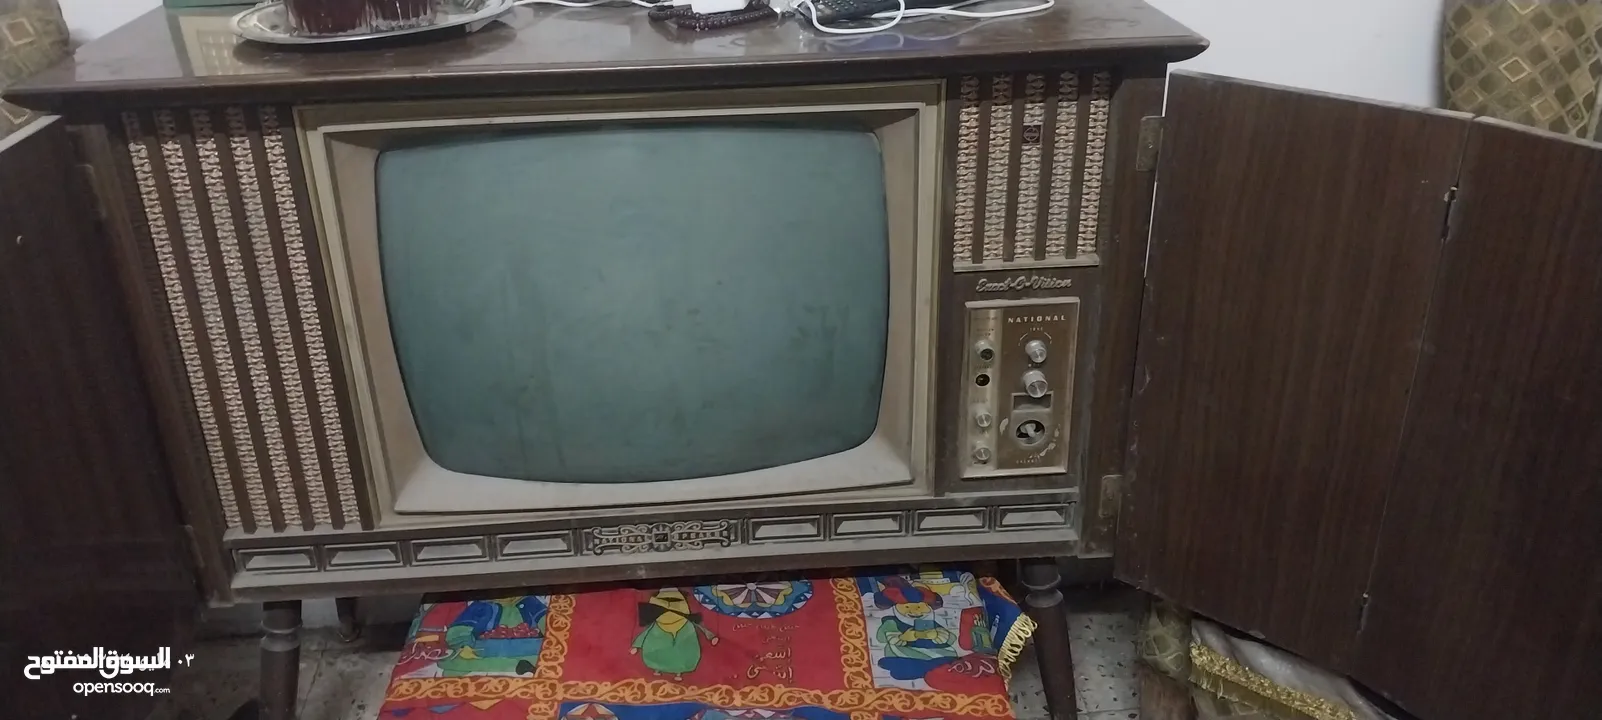 تلفزيون نشونال قديم TF-35WE